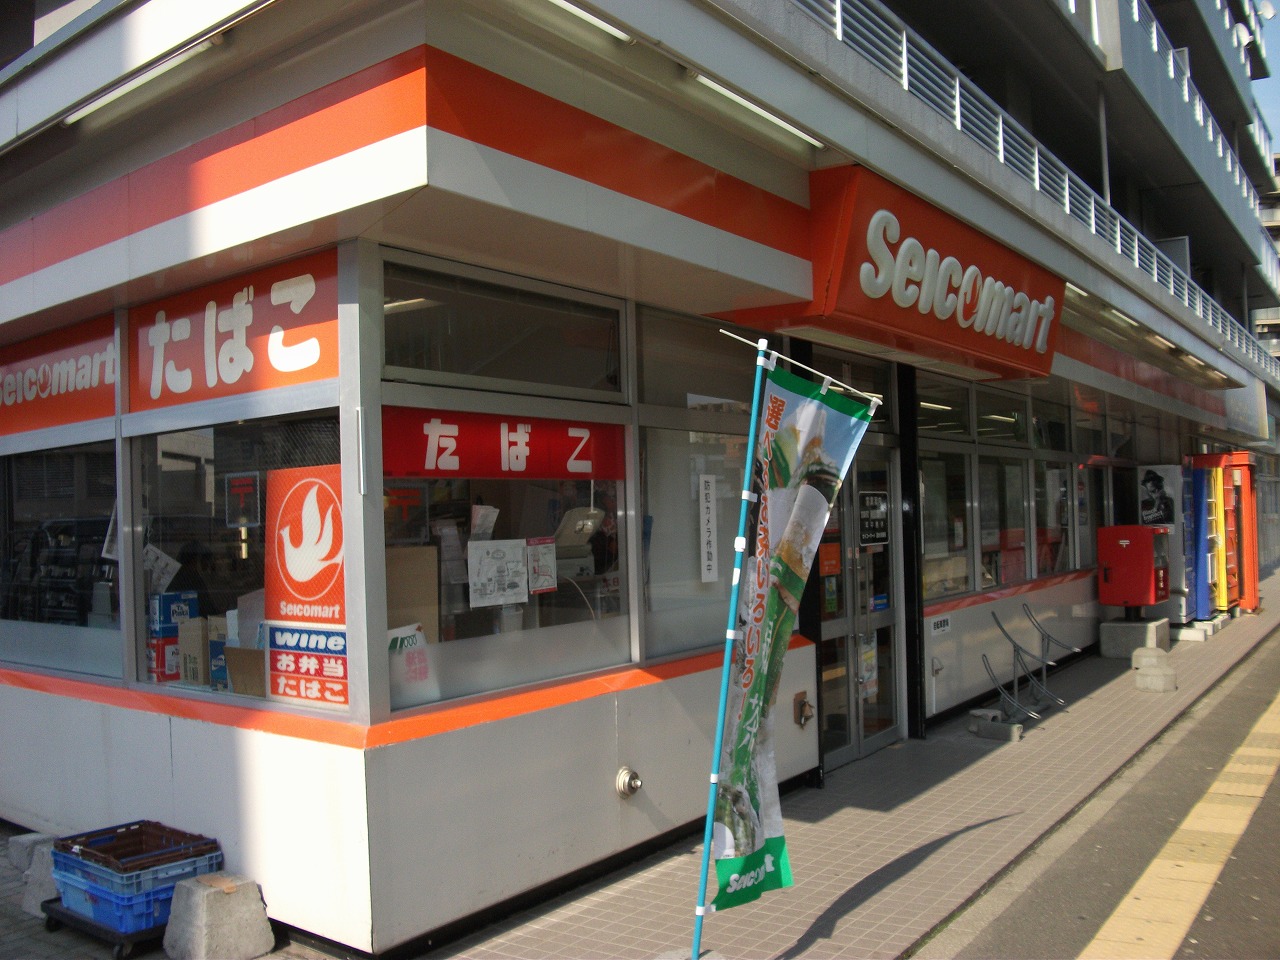 Convenience store. Seicomart Kobayashi Hassamu 56m to the store (convenience store)